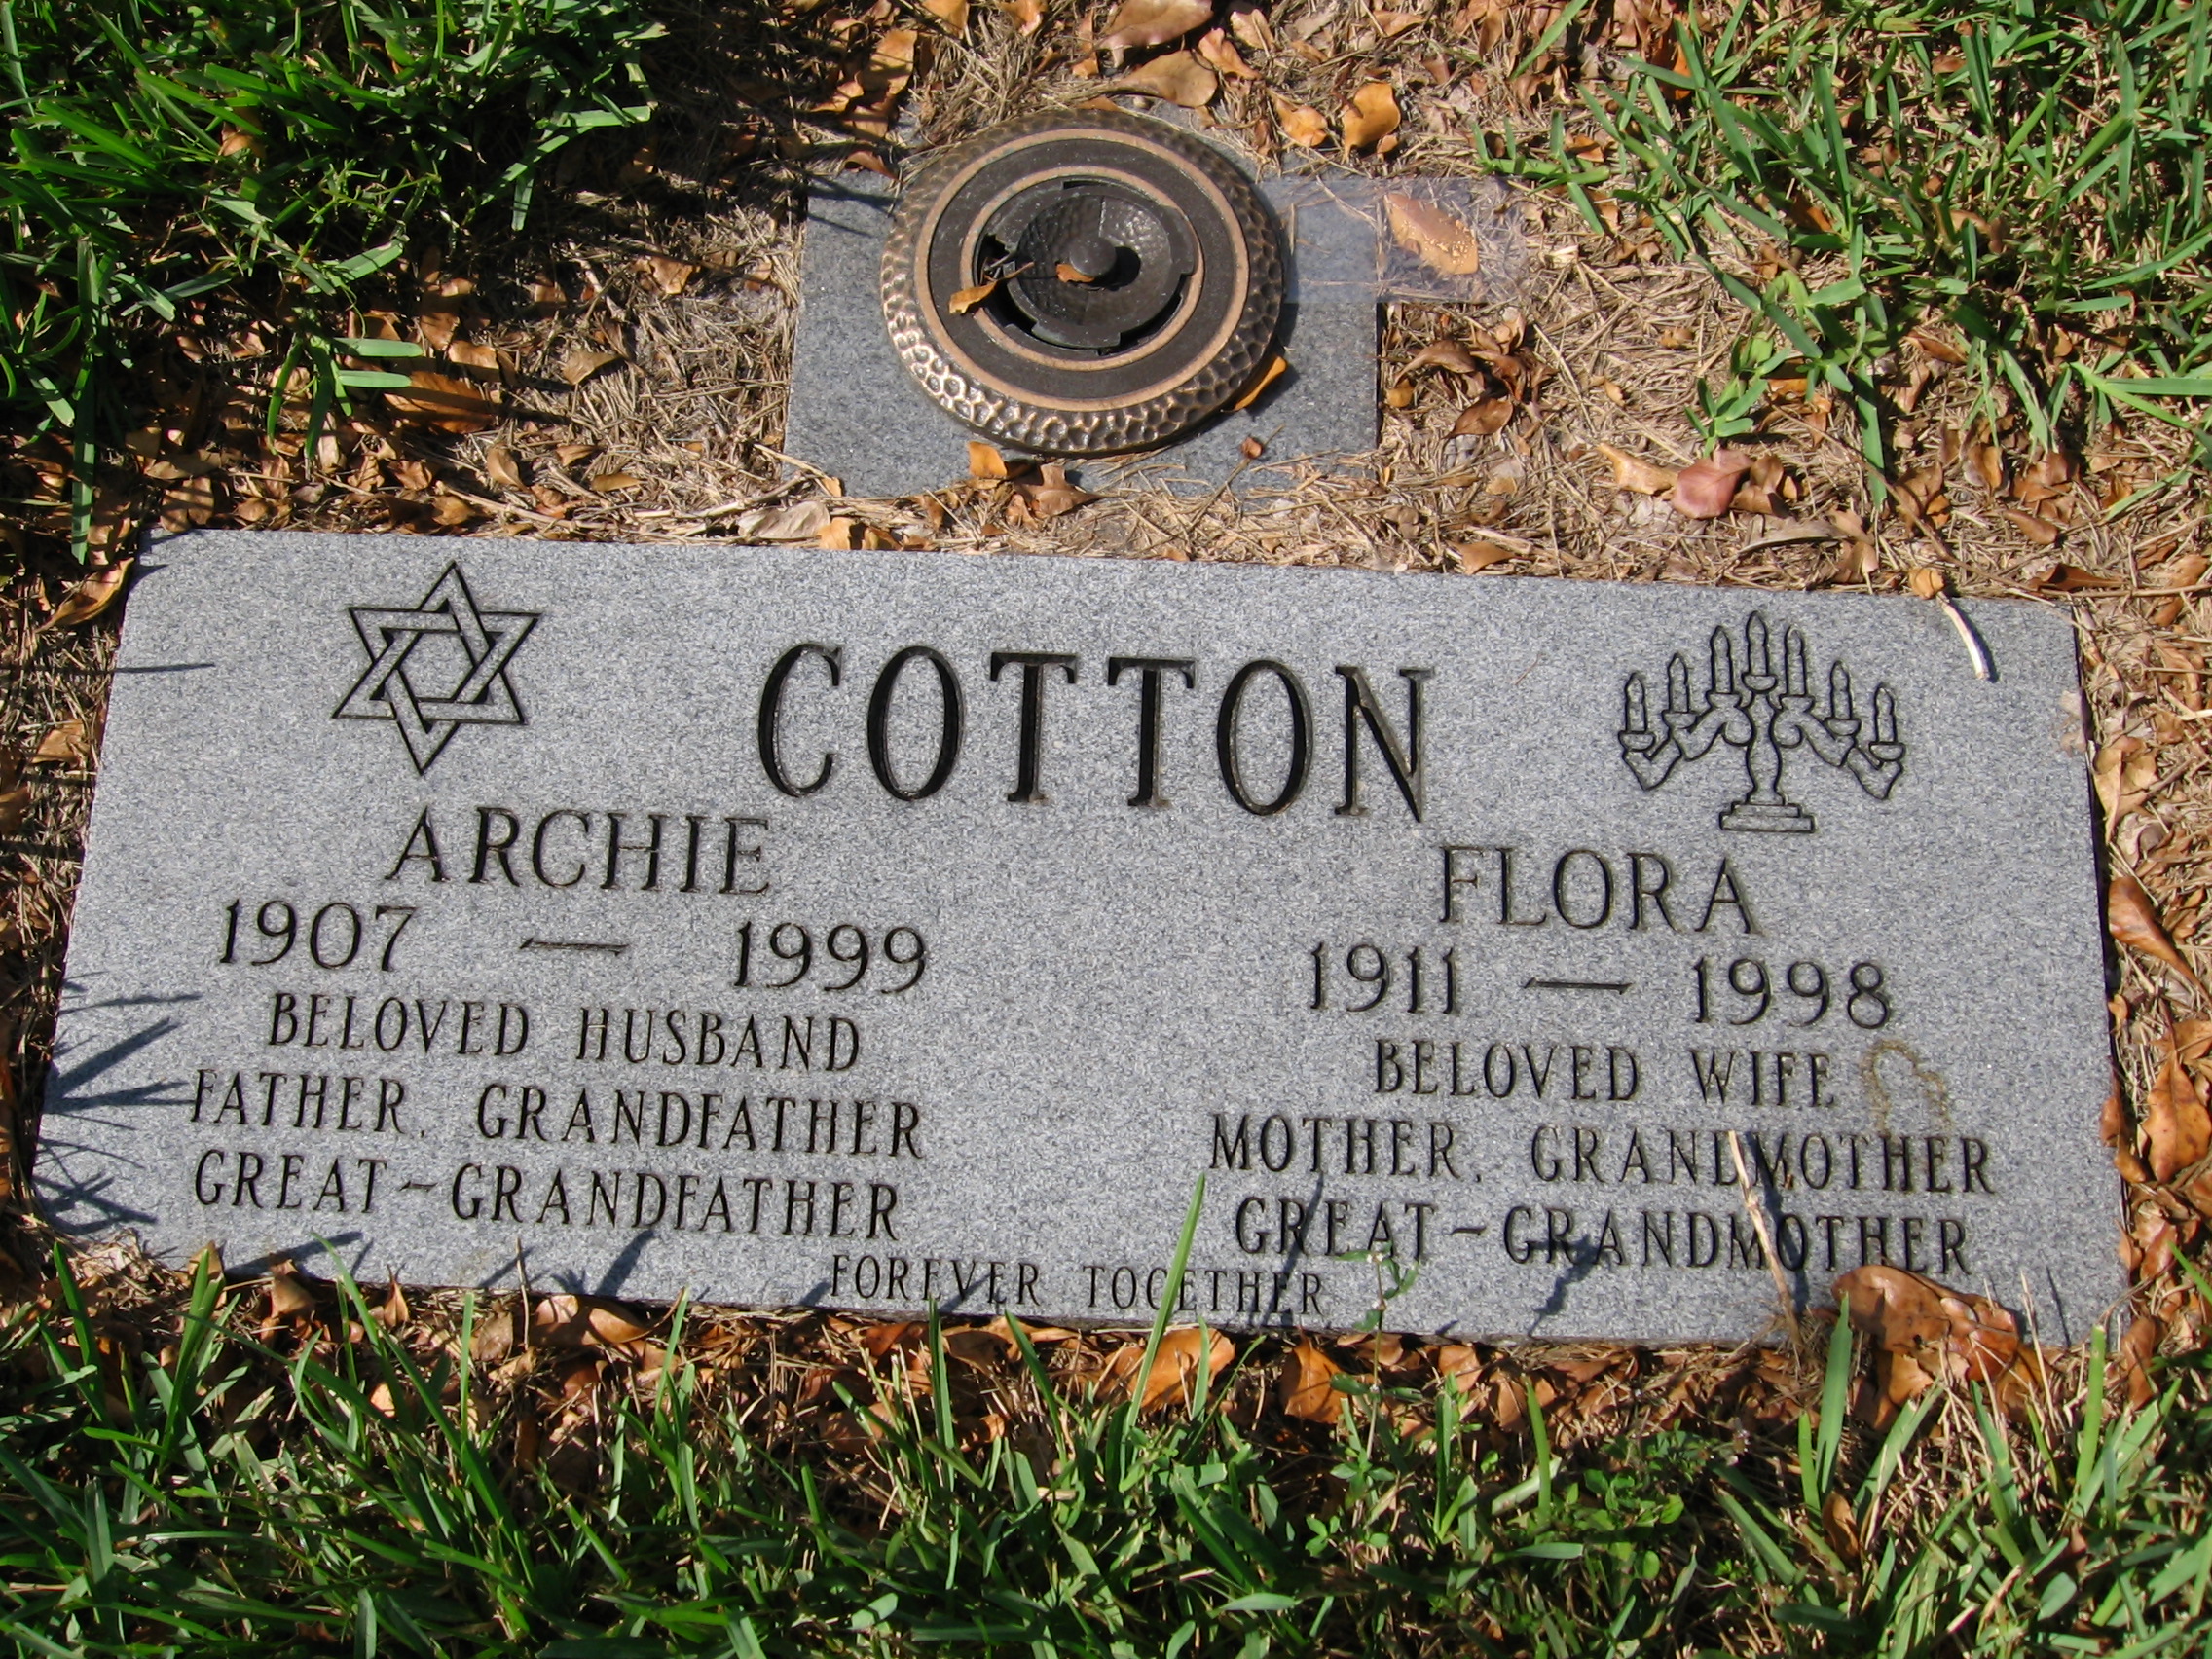 Archie Cotton